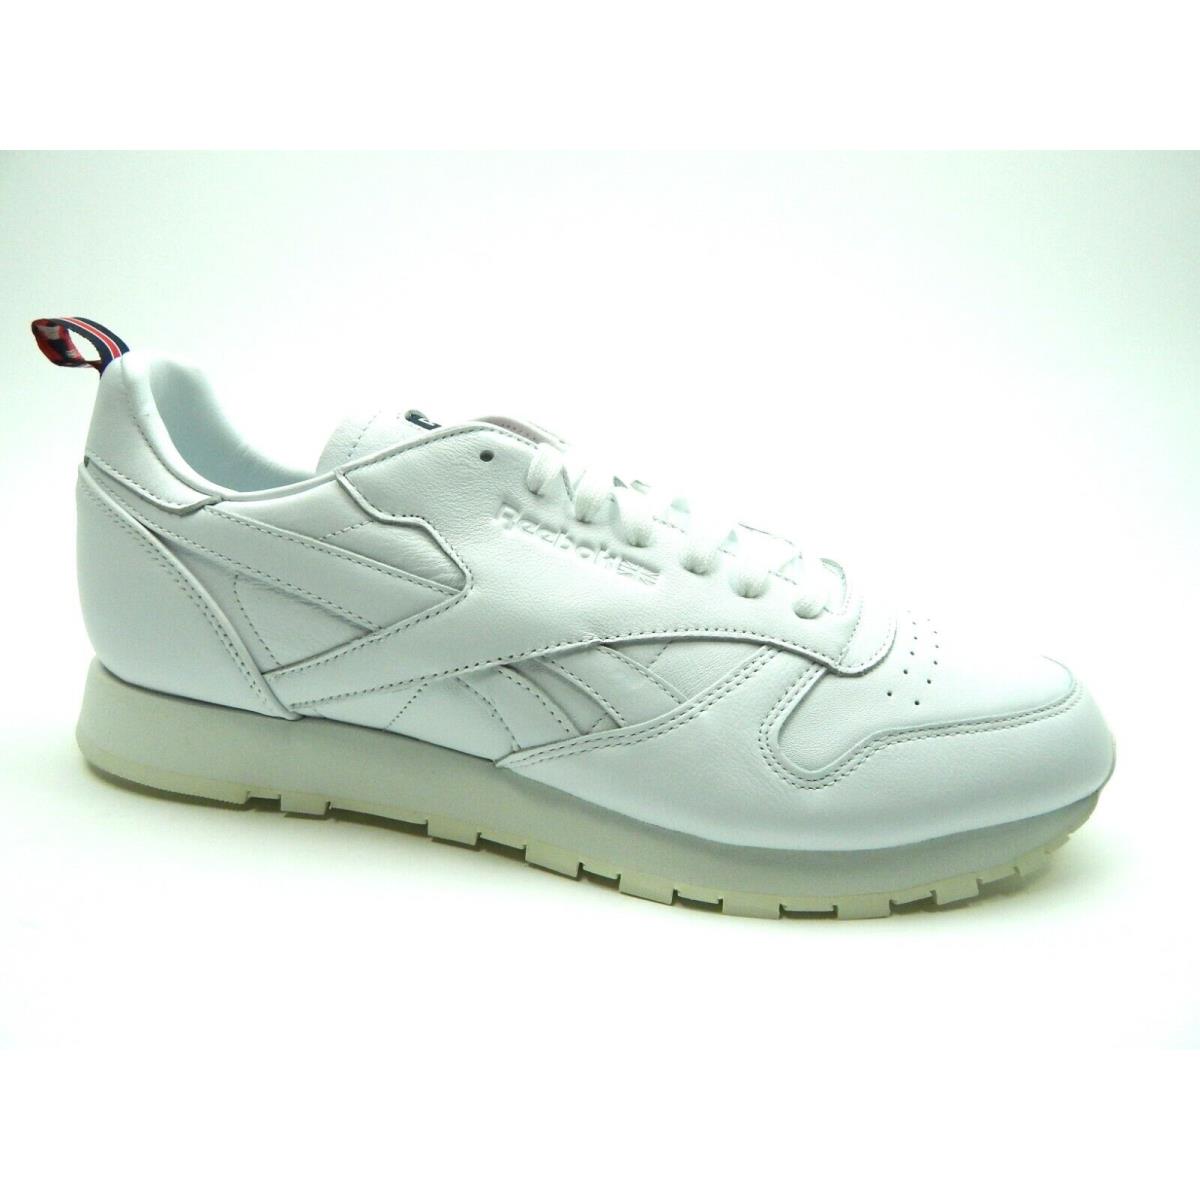 Reebok CL Classic FW7796 White Chalk Men Shoes Size 6.5